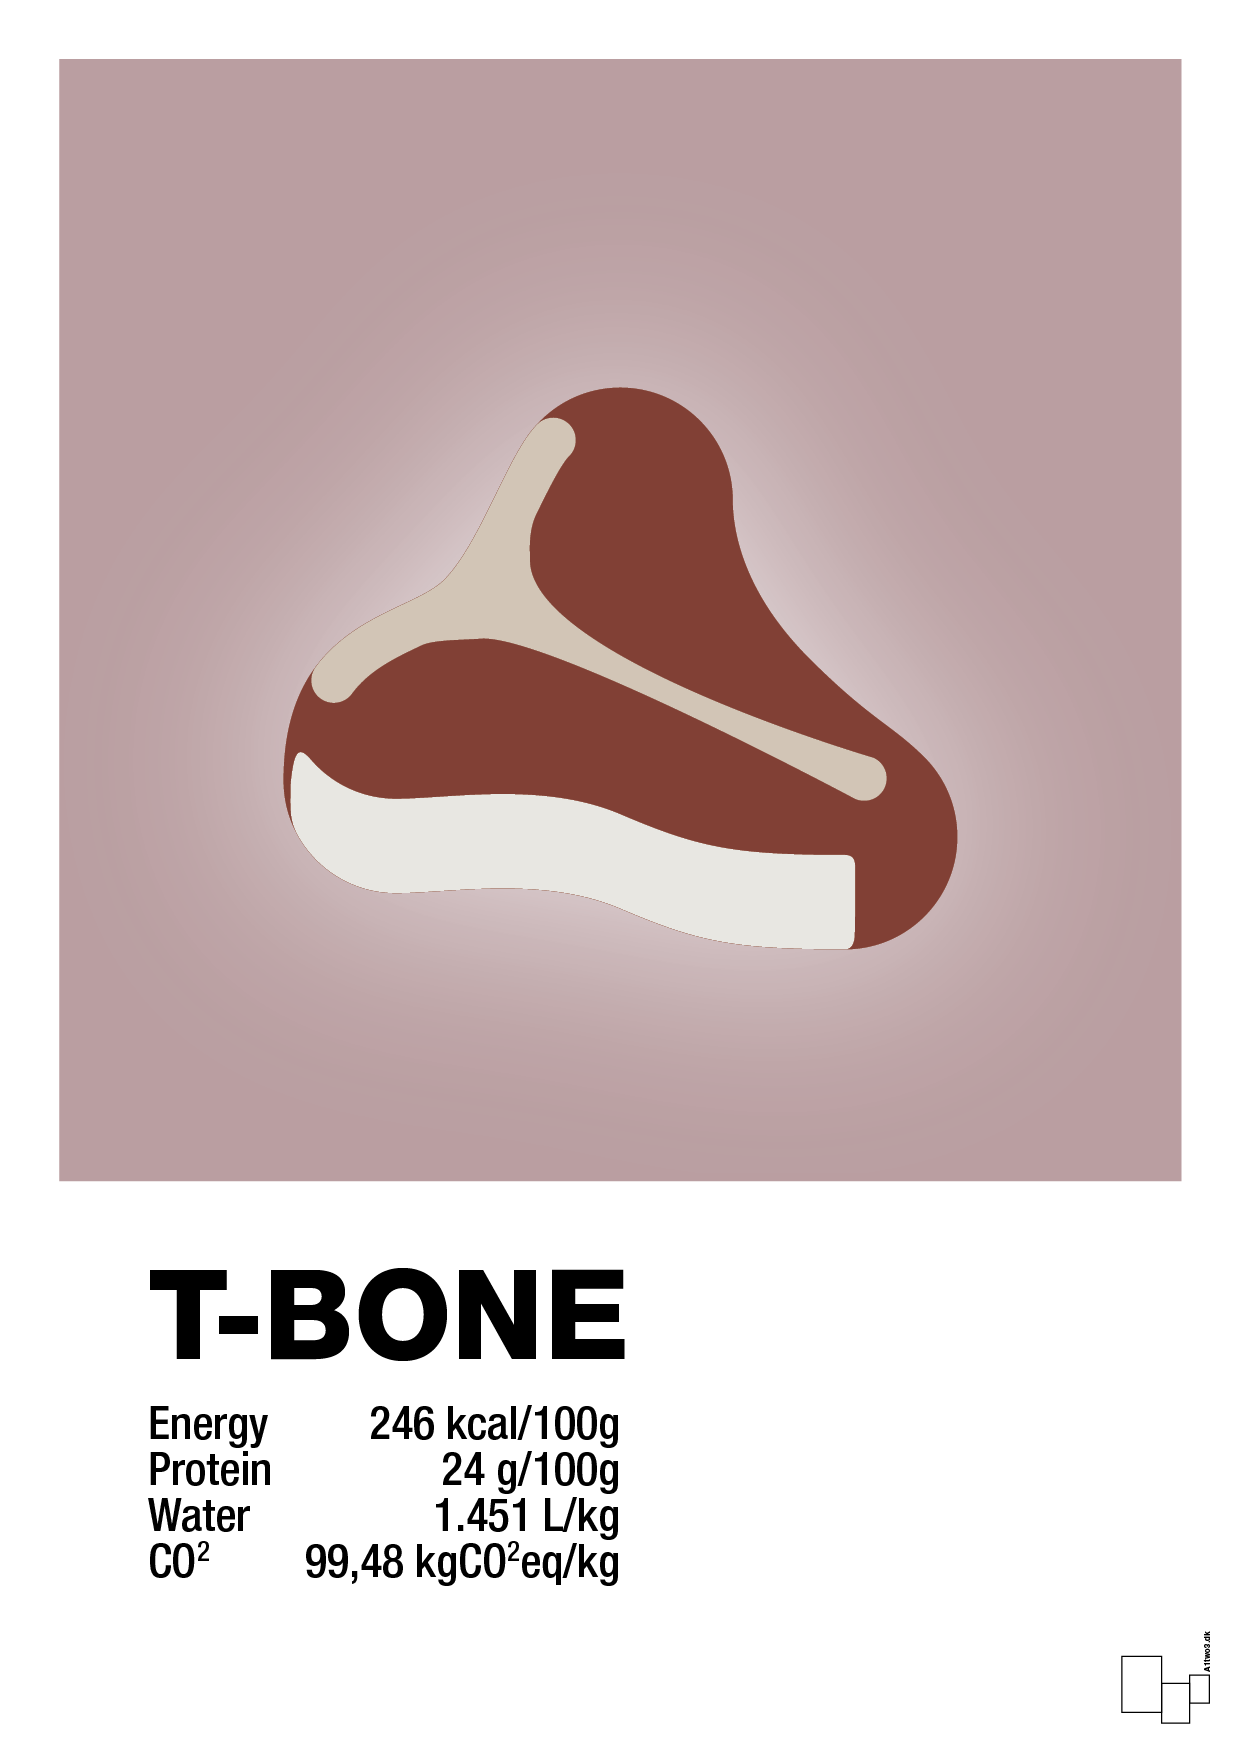 t-bone nutrition og miljø - Plakat med Mad & Drikke i Light Rose